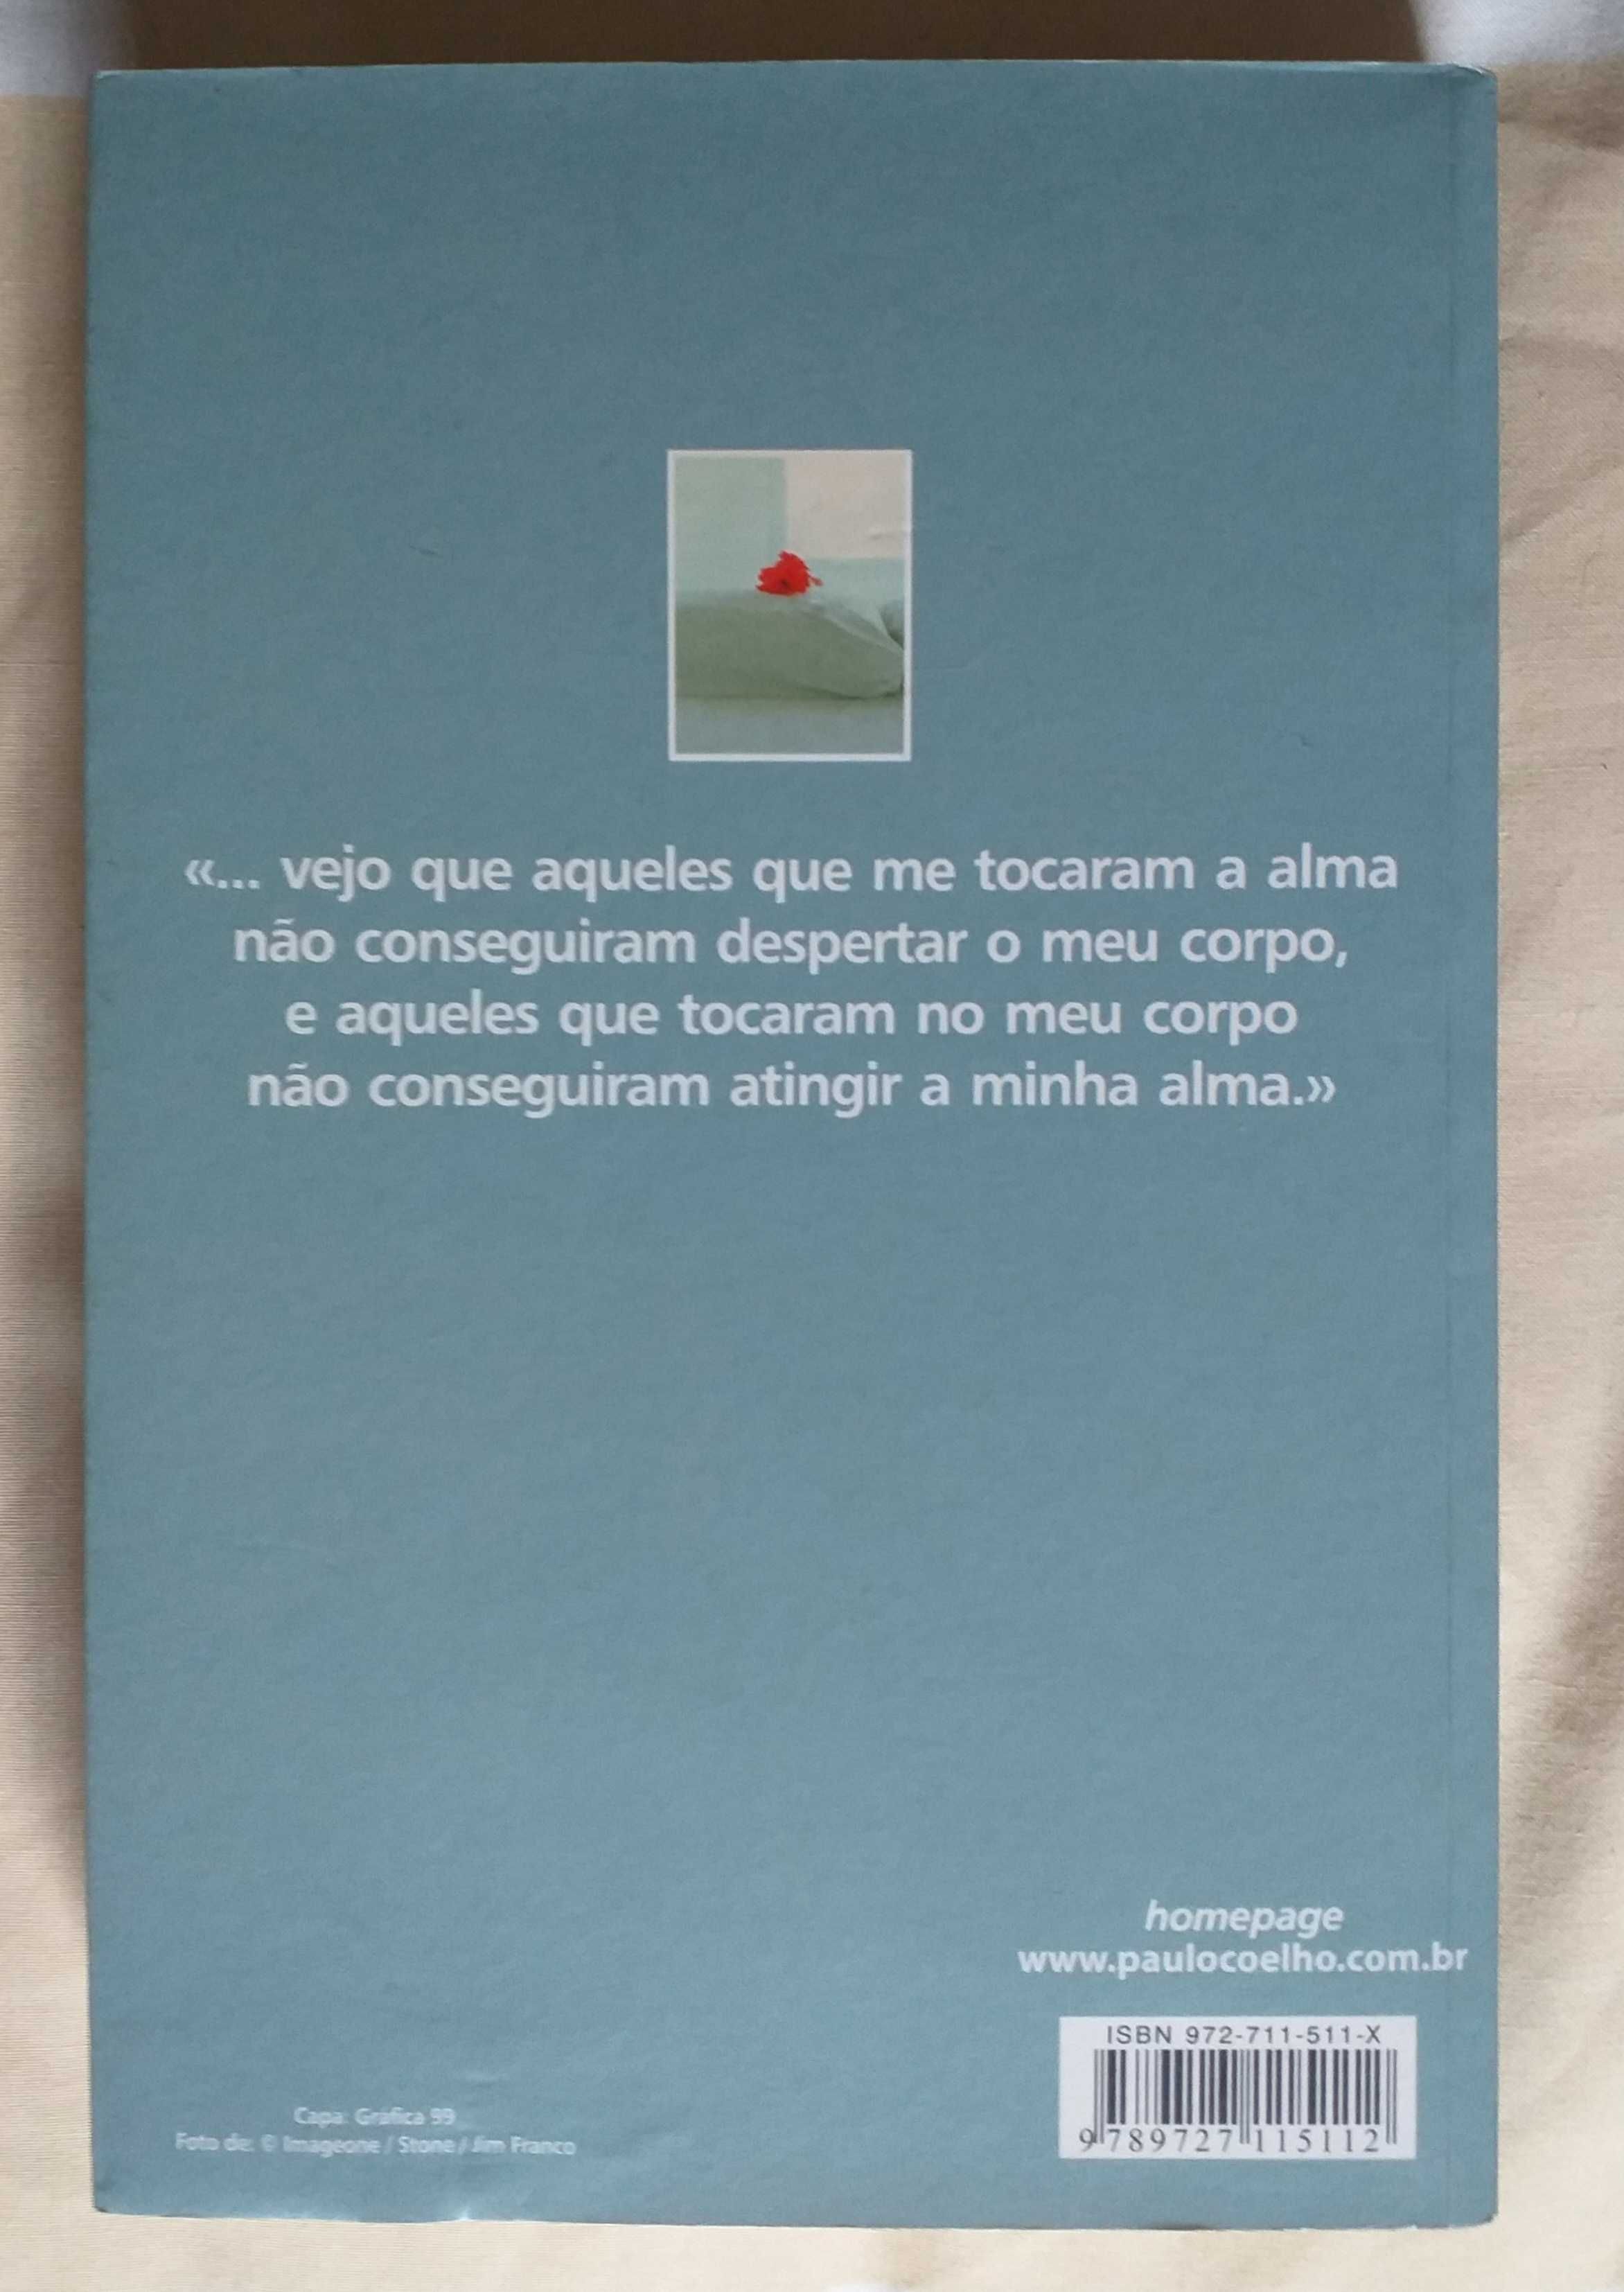 Livro "Onze minutos" e Monte Cinco" de Paulo Coelho excelente estado.